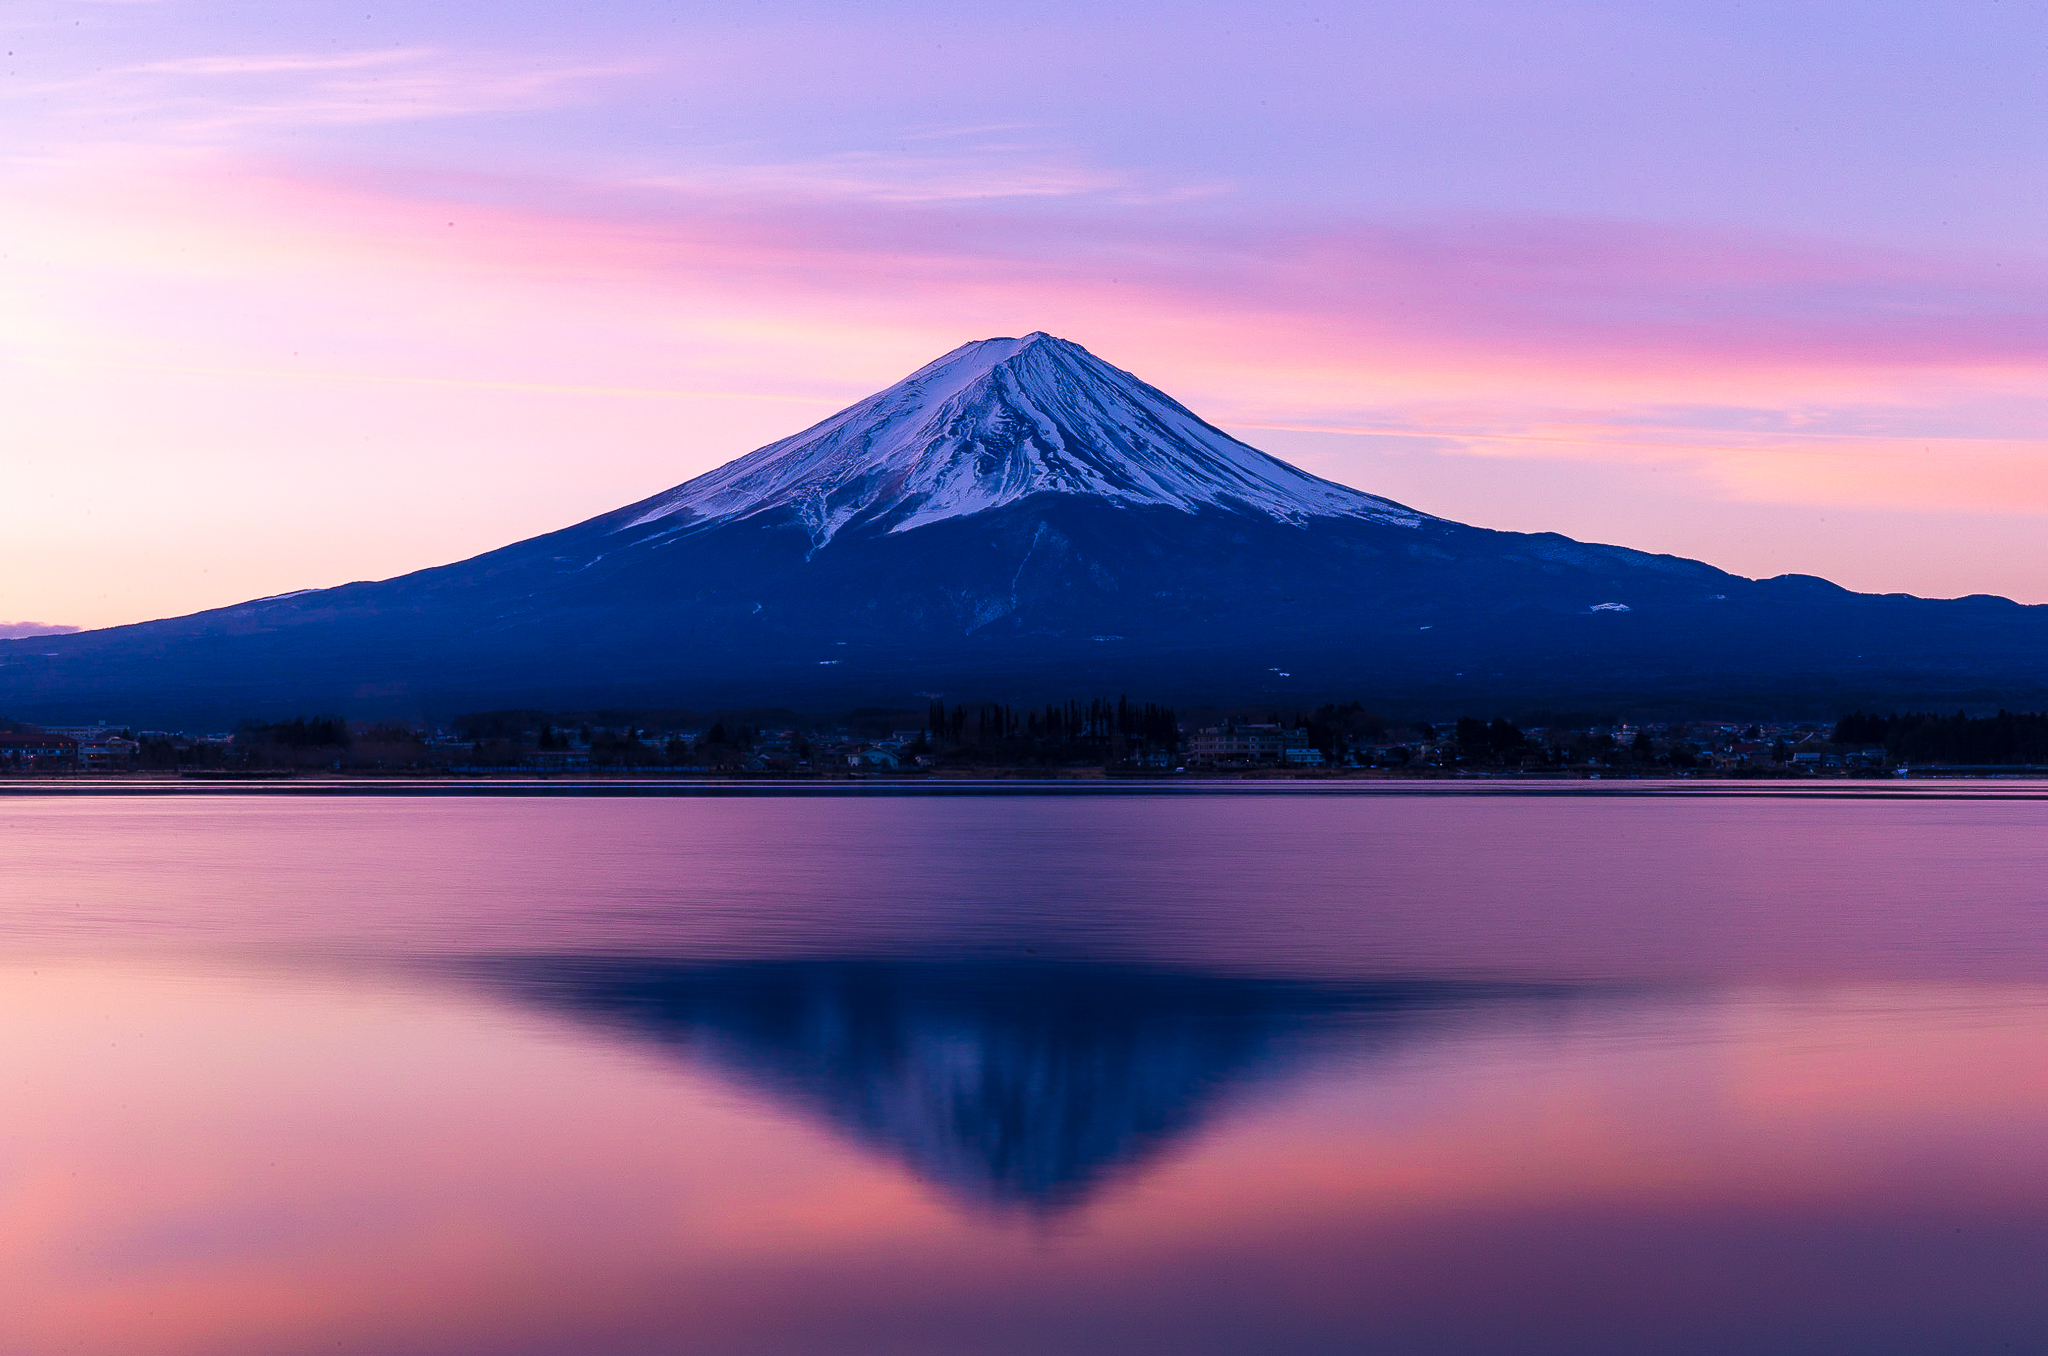 無料 富士山写真ダウンロード 壁紙 フリー 素材 富士山写真ブログ 富士山 富士五湖の情報ブログ